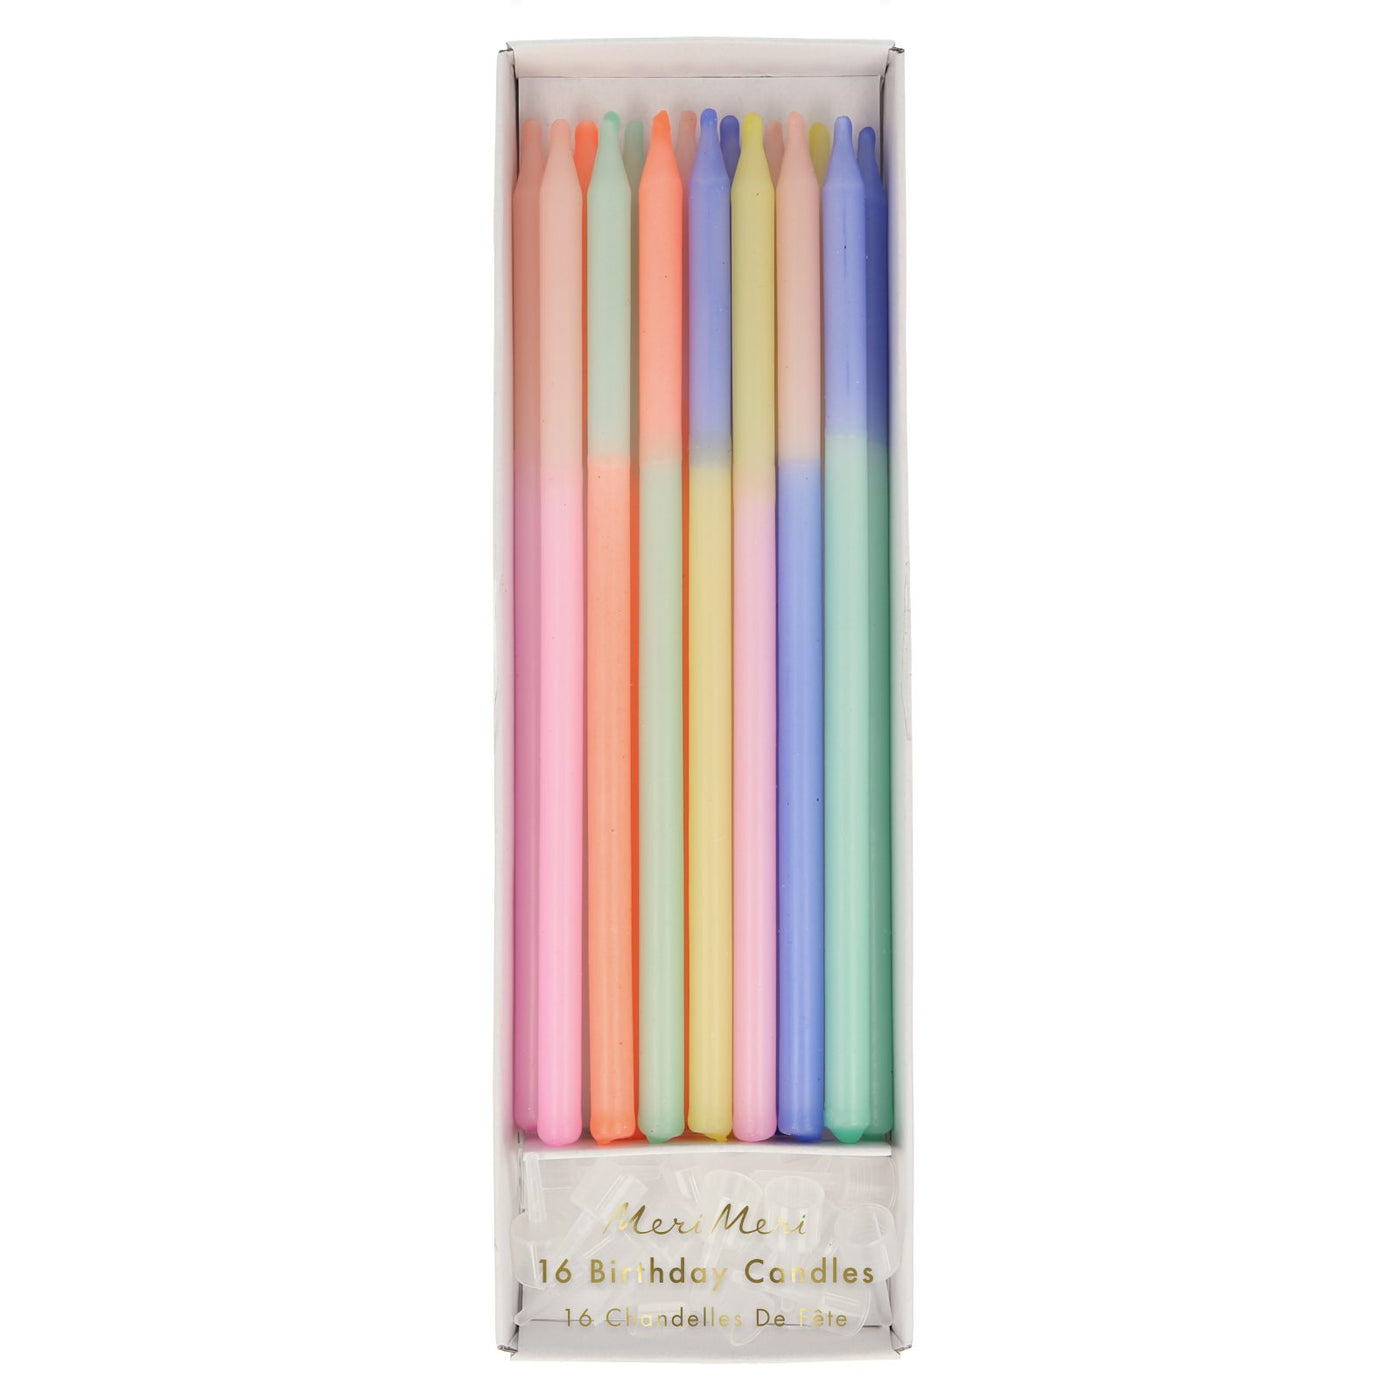 Meri Meri lys, multi colour block candle